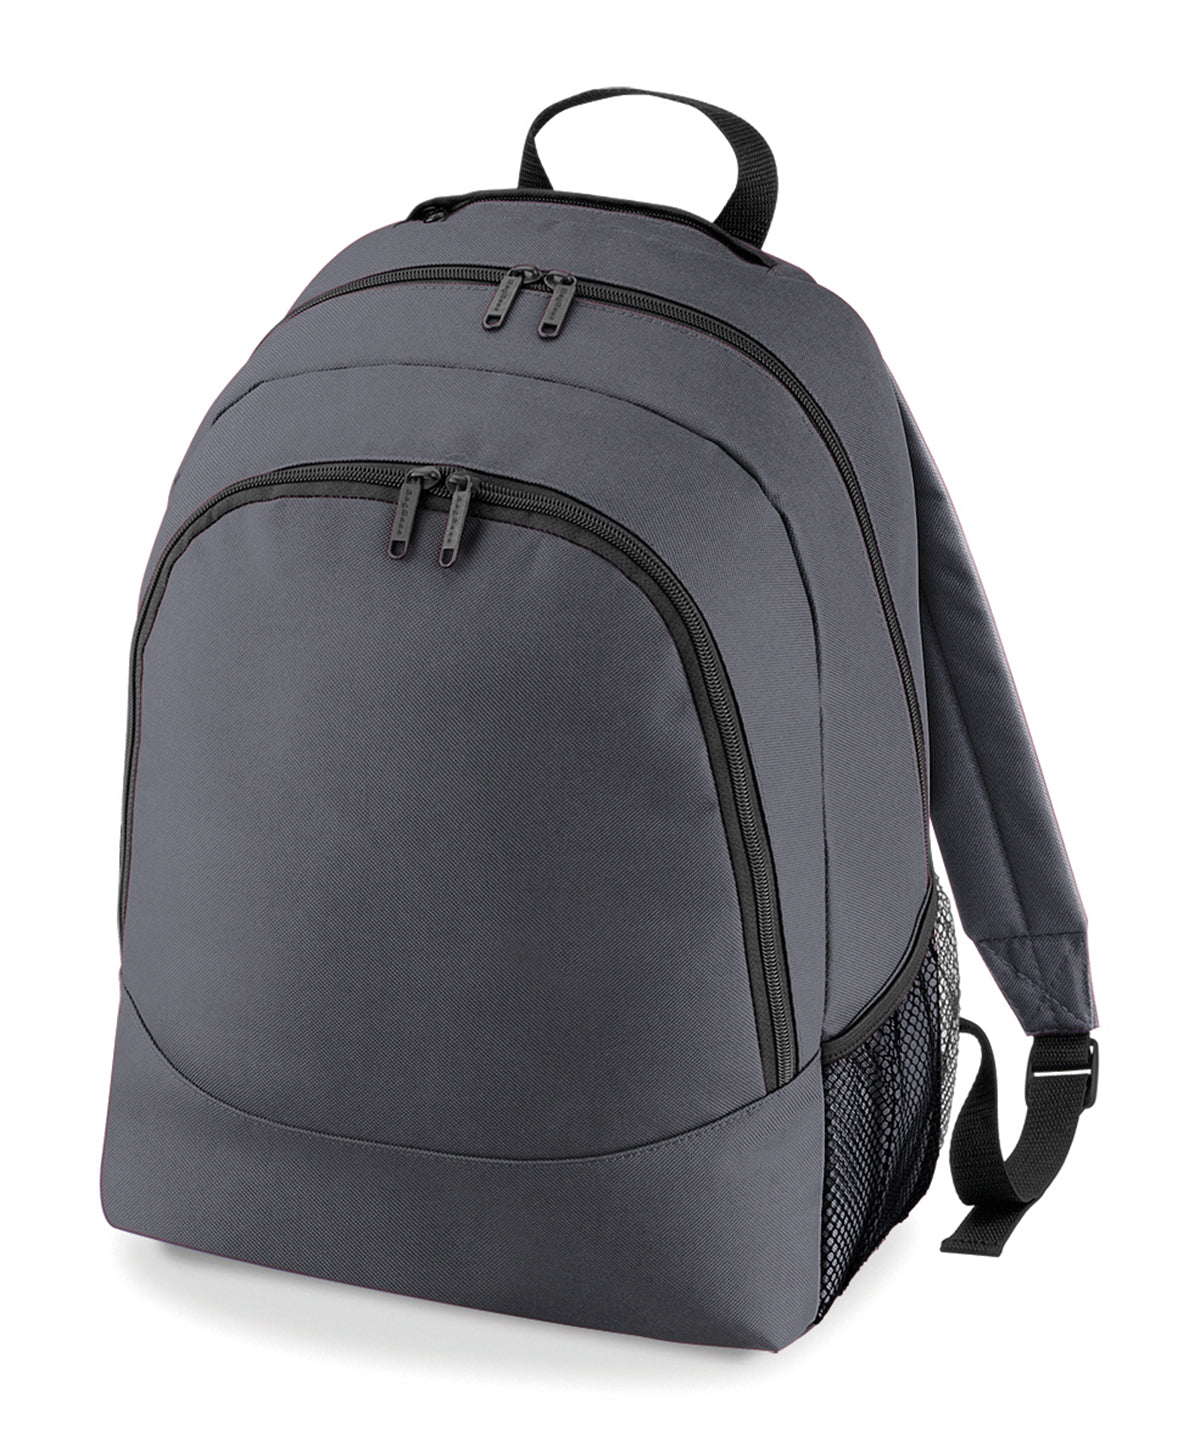 Personalised Bags - Dark Grey Bagbase Universal backpack